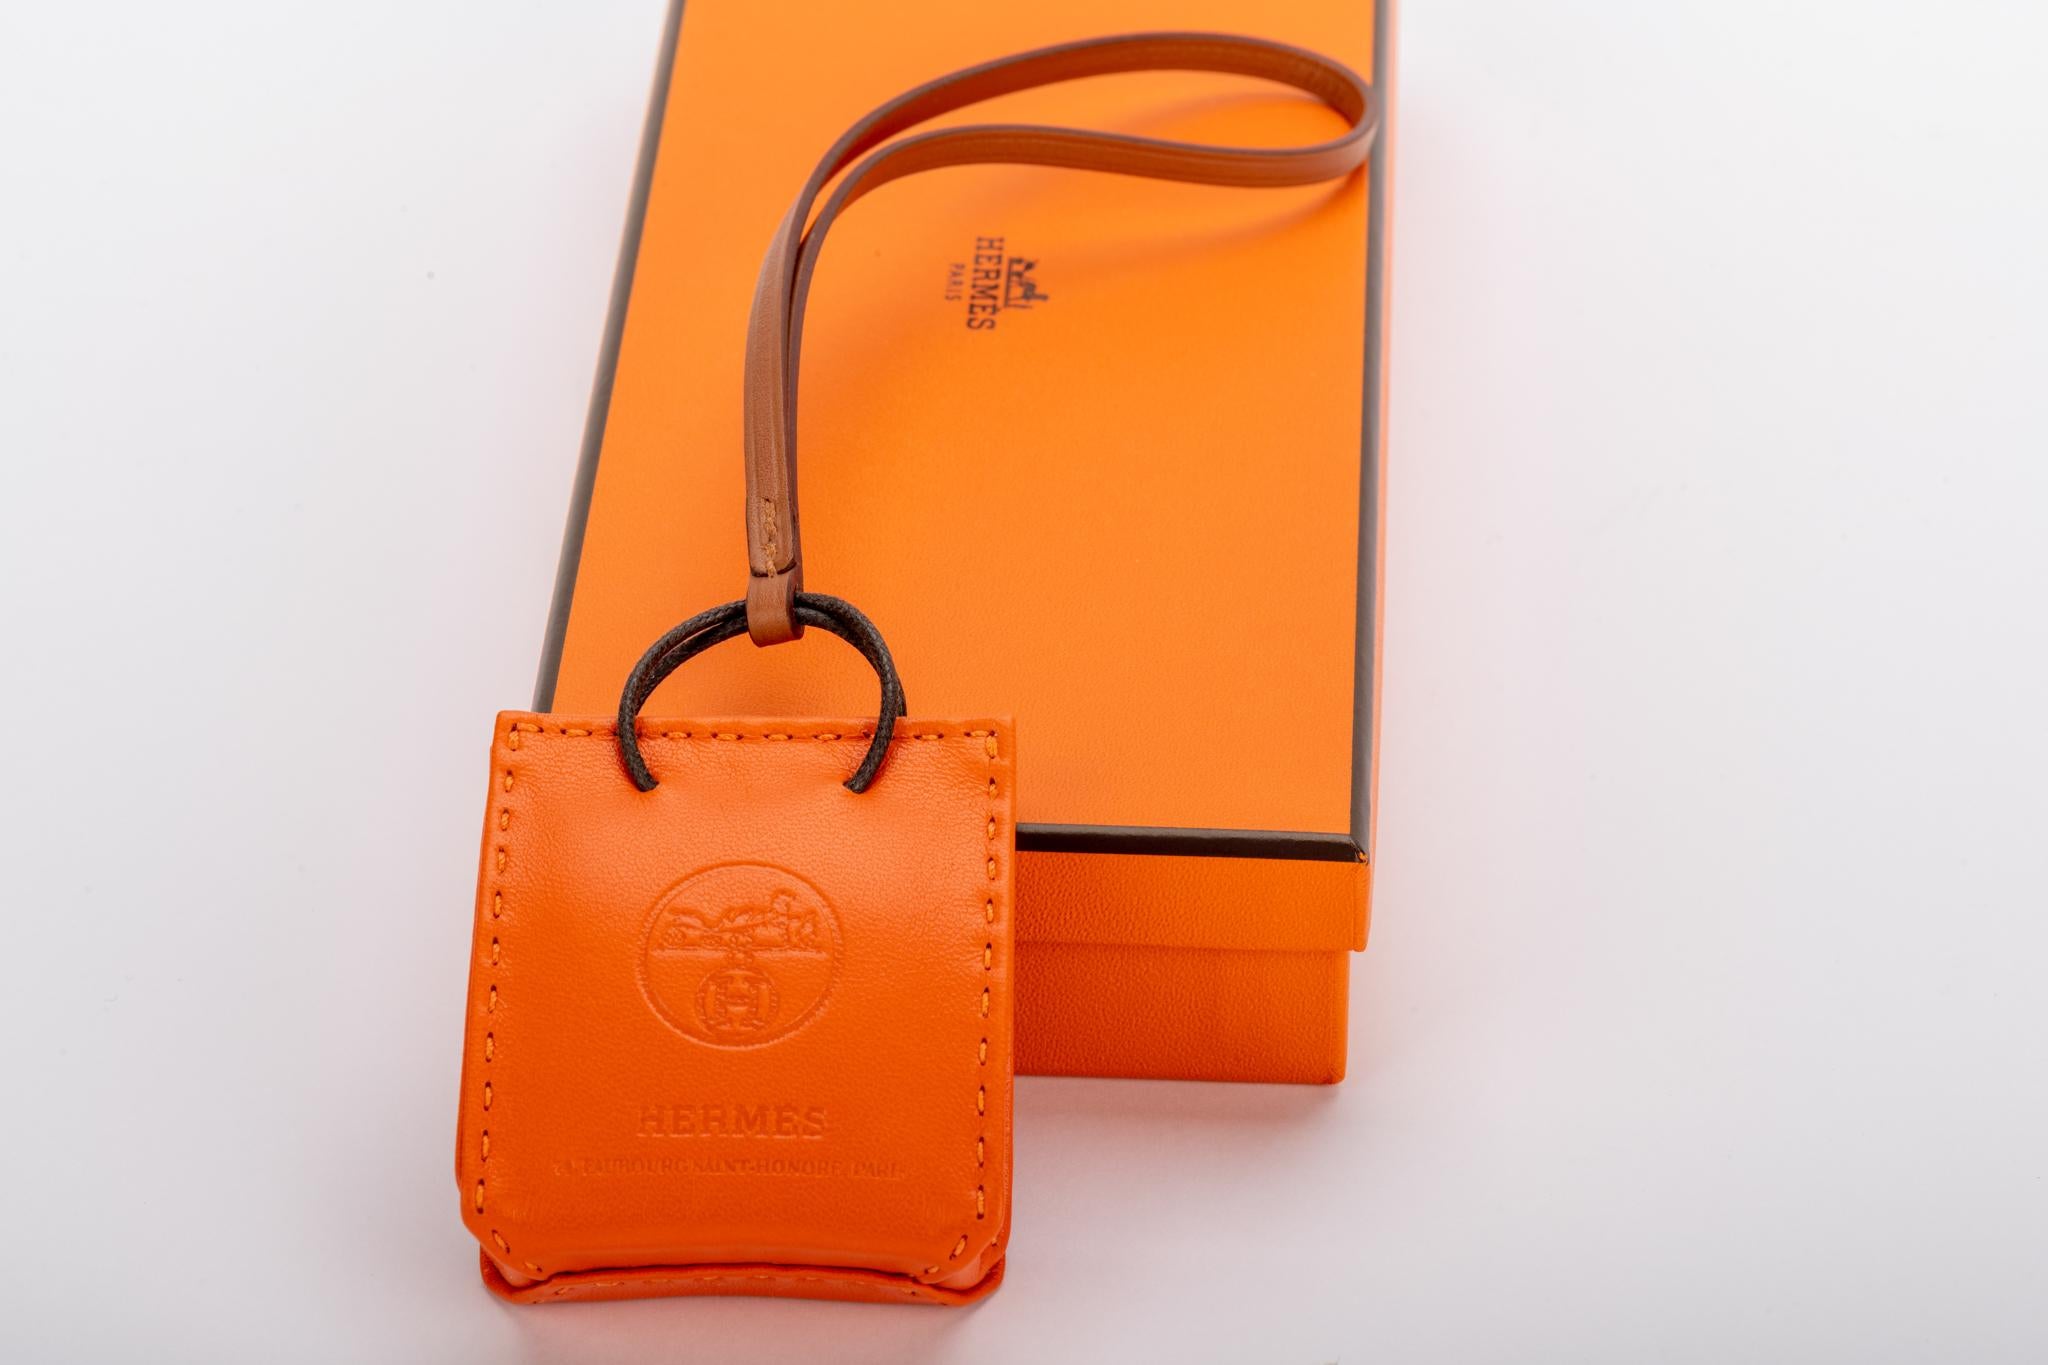 Hermes 2020 Kollektion orange Tasche Charme in Swift Leder. Brandneu mit Originalverpackung.